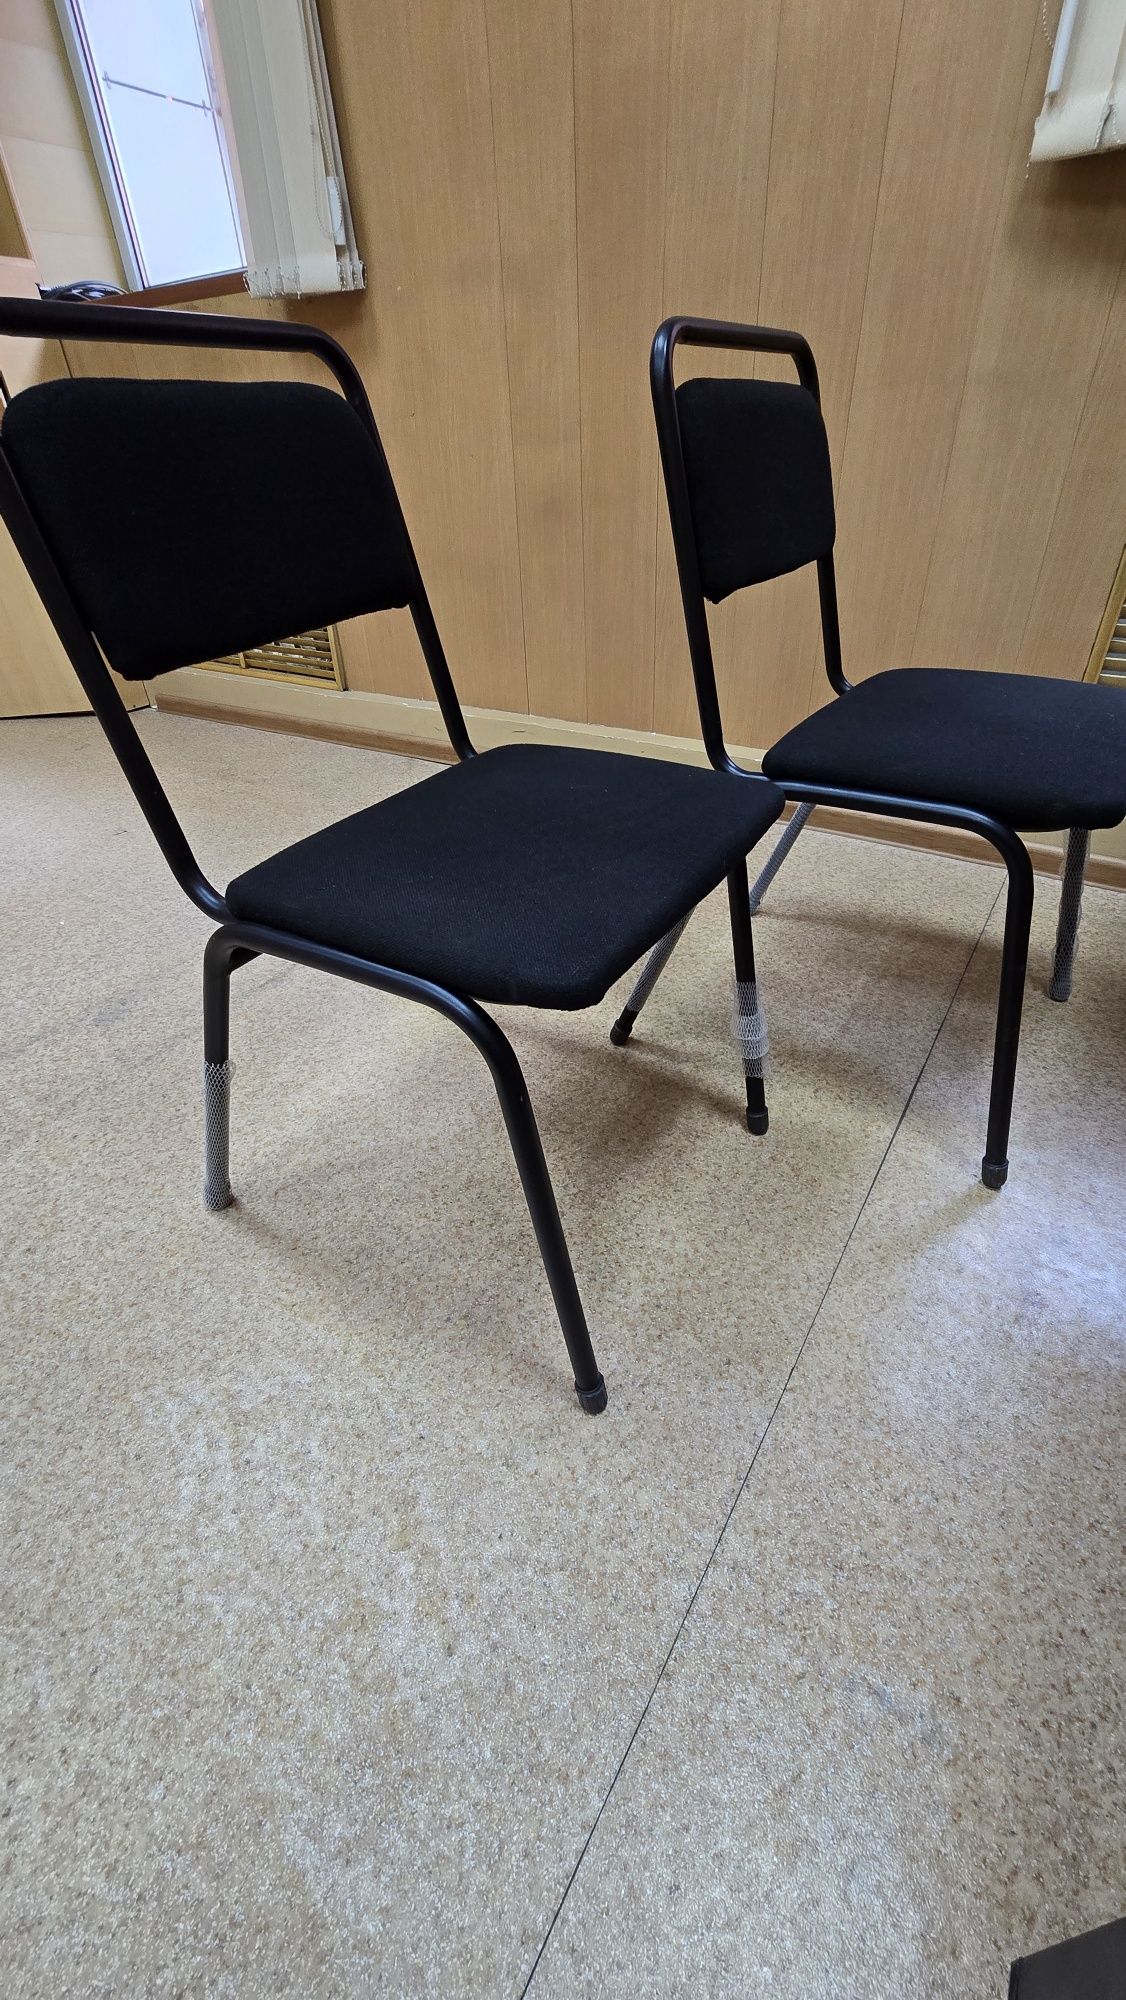 Продам стол и 4 стула для офиса